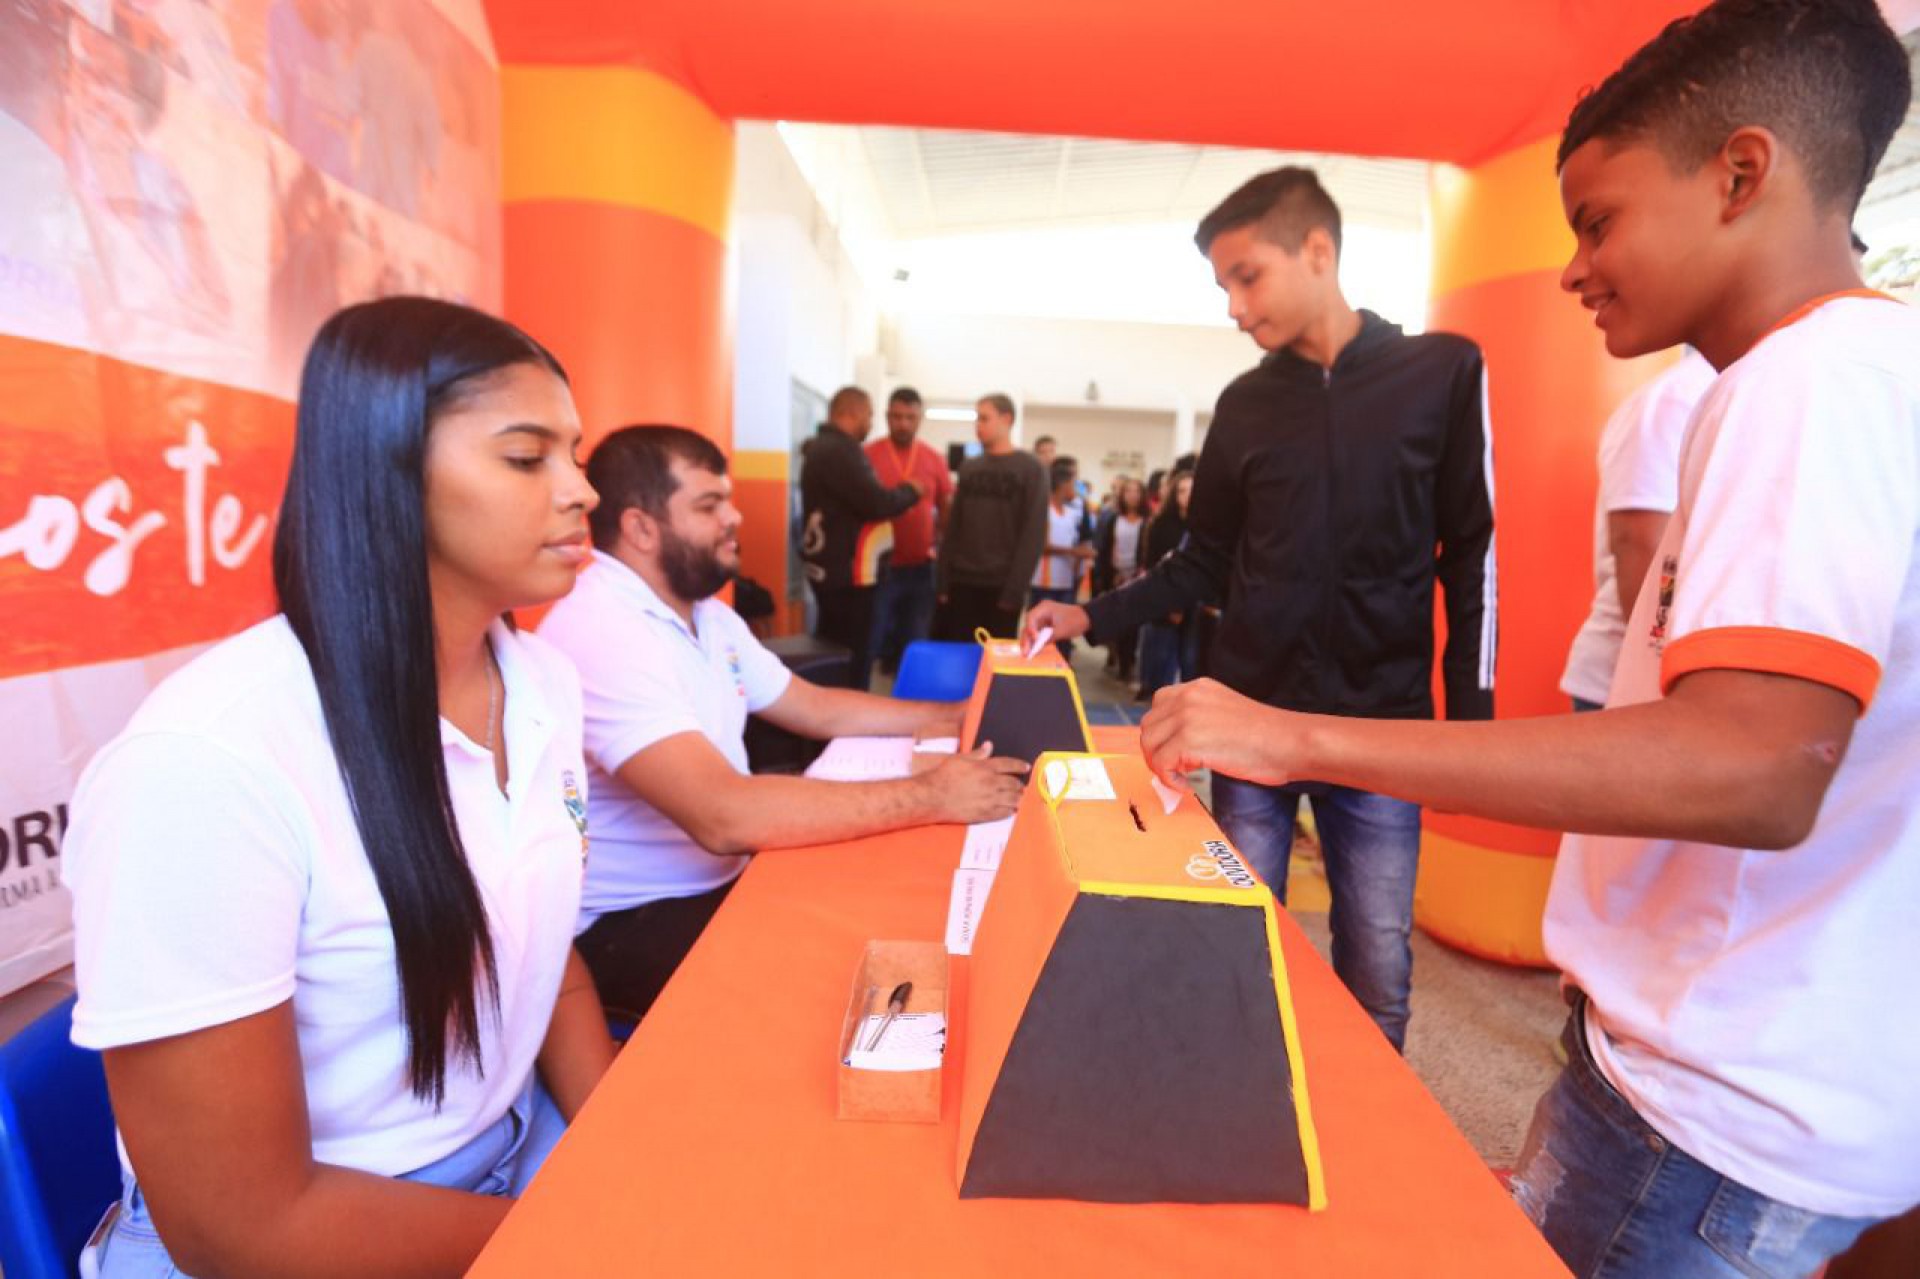 Os alunos participaram ativamente da votação para a escolha do ouvidor mirim da Escola Municipal Belford Roxo - Rafael Barreto / PMBR